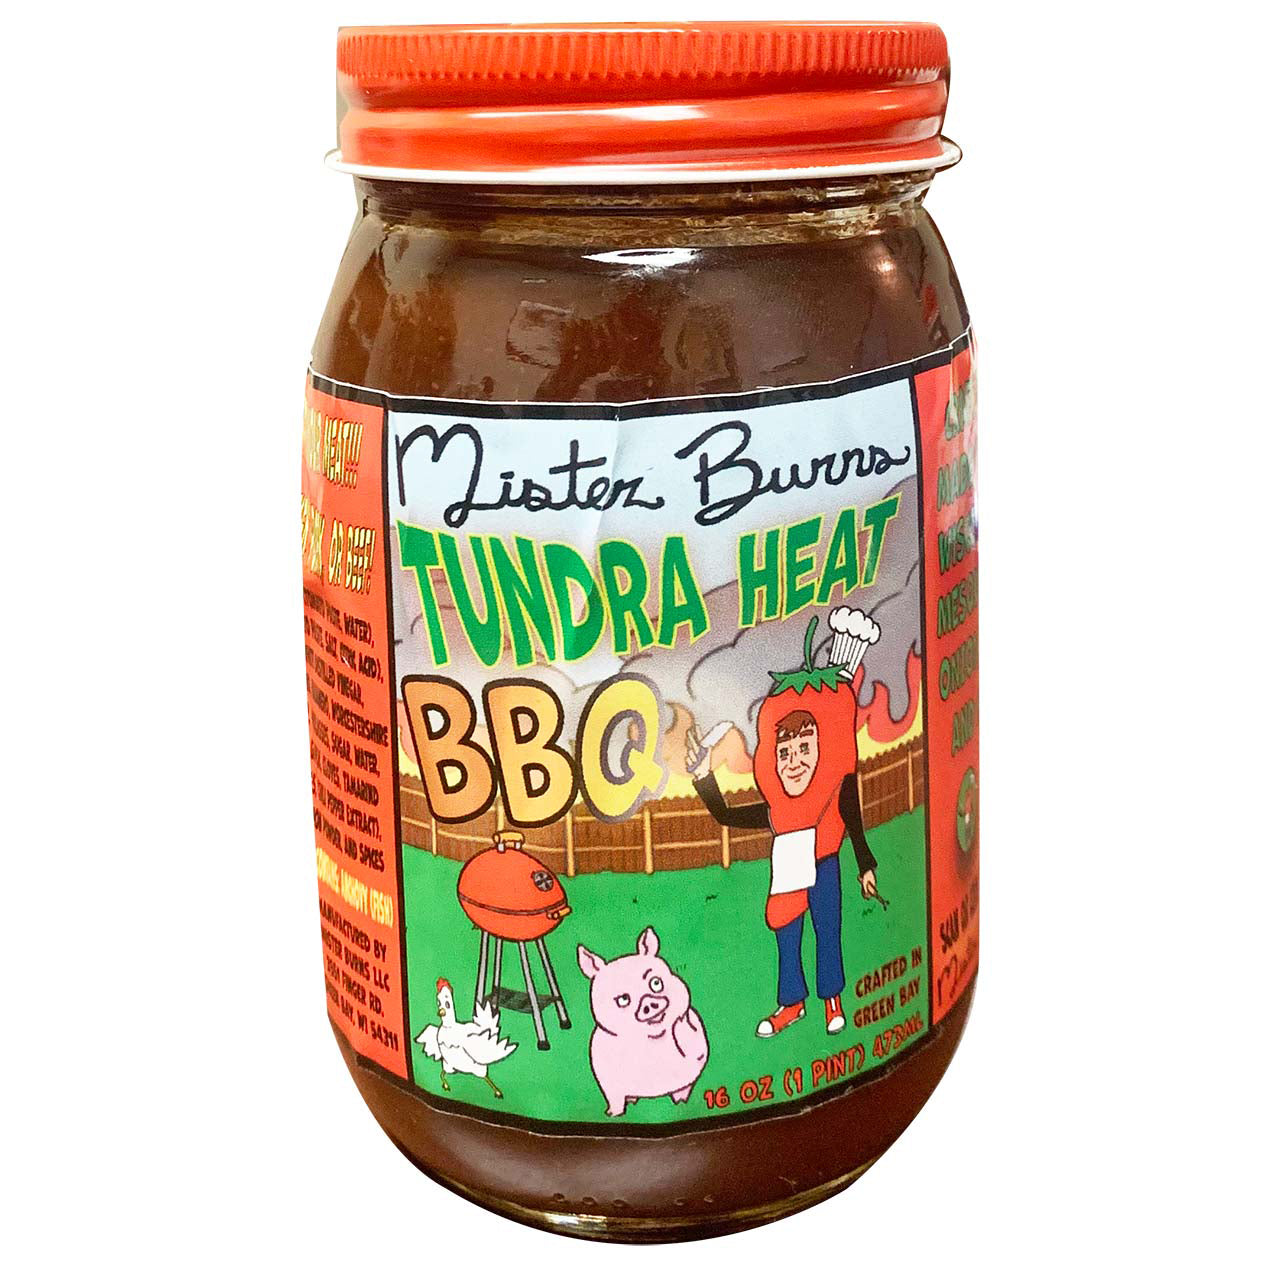 Tundra Heat BBQ